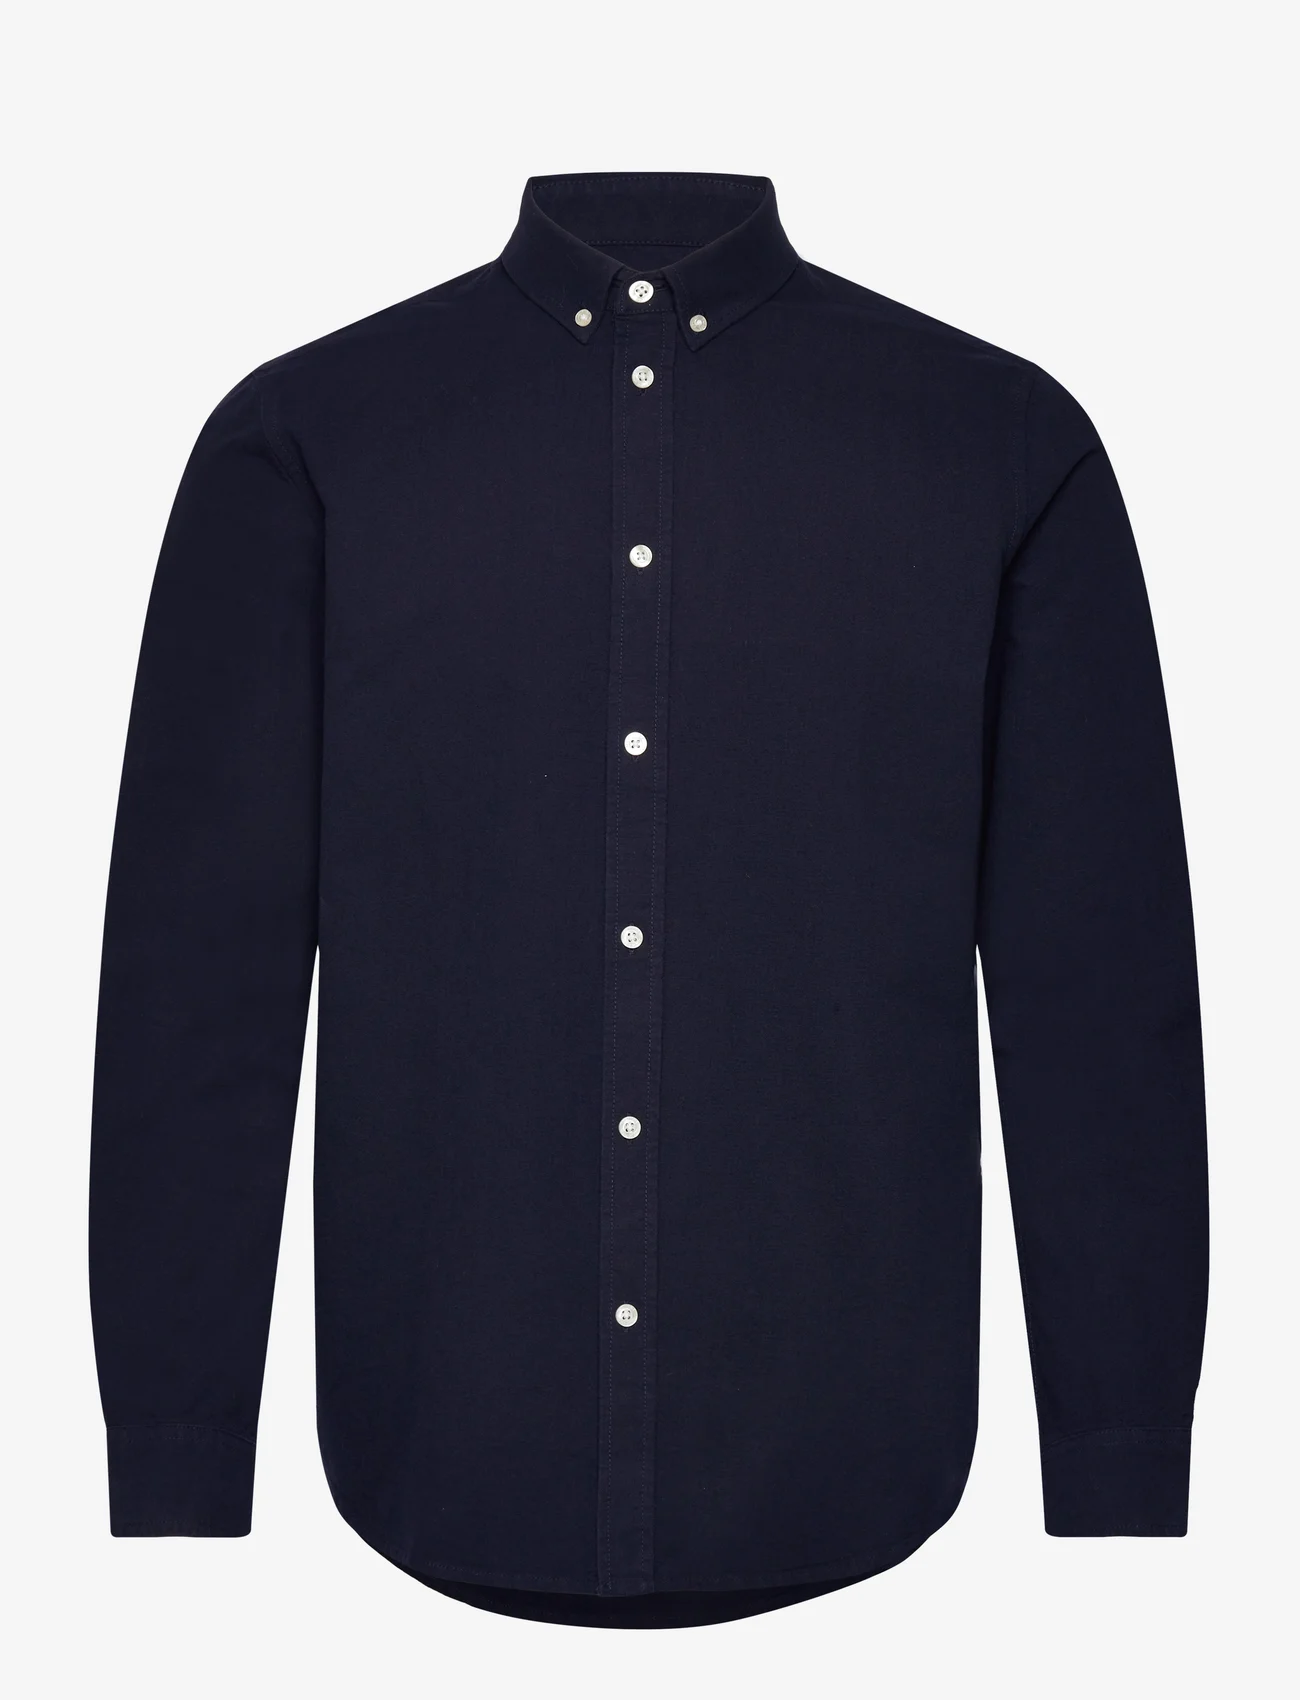 Samsøe Samsøe - Liam BX shirt 11389 - basic skjorter - night sky - 0